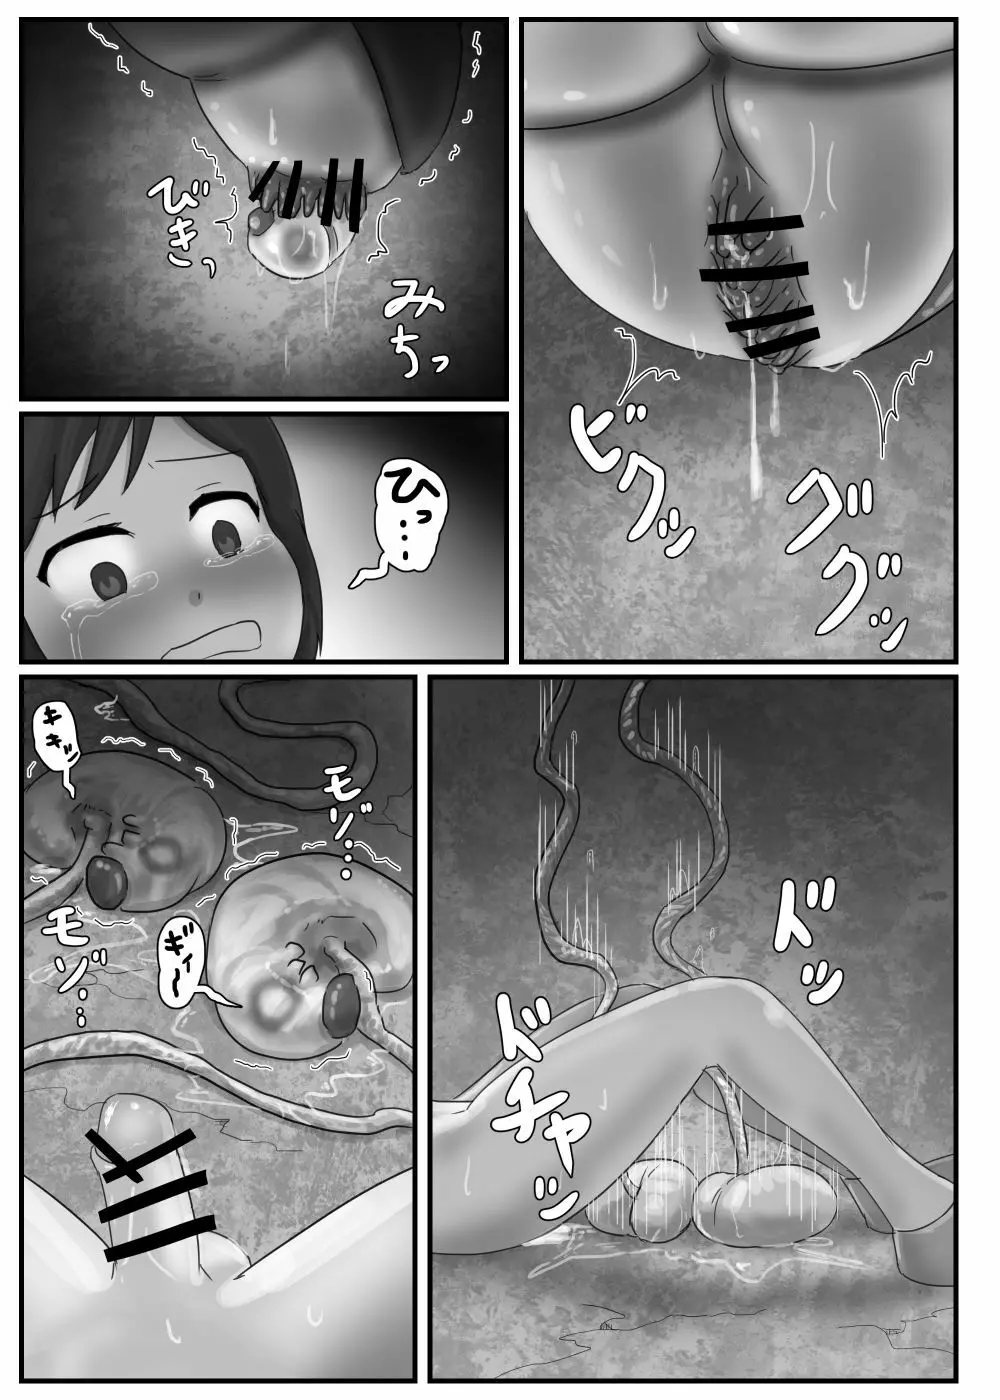 巨大蟲の交配場 - page11